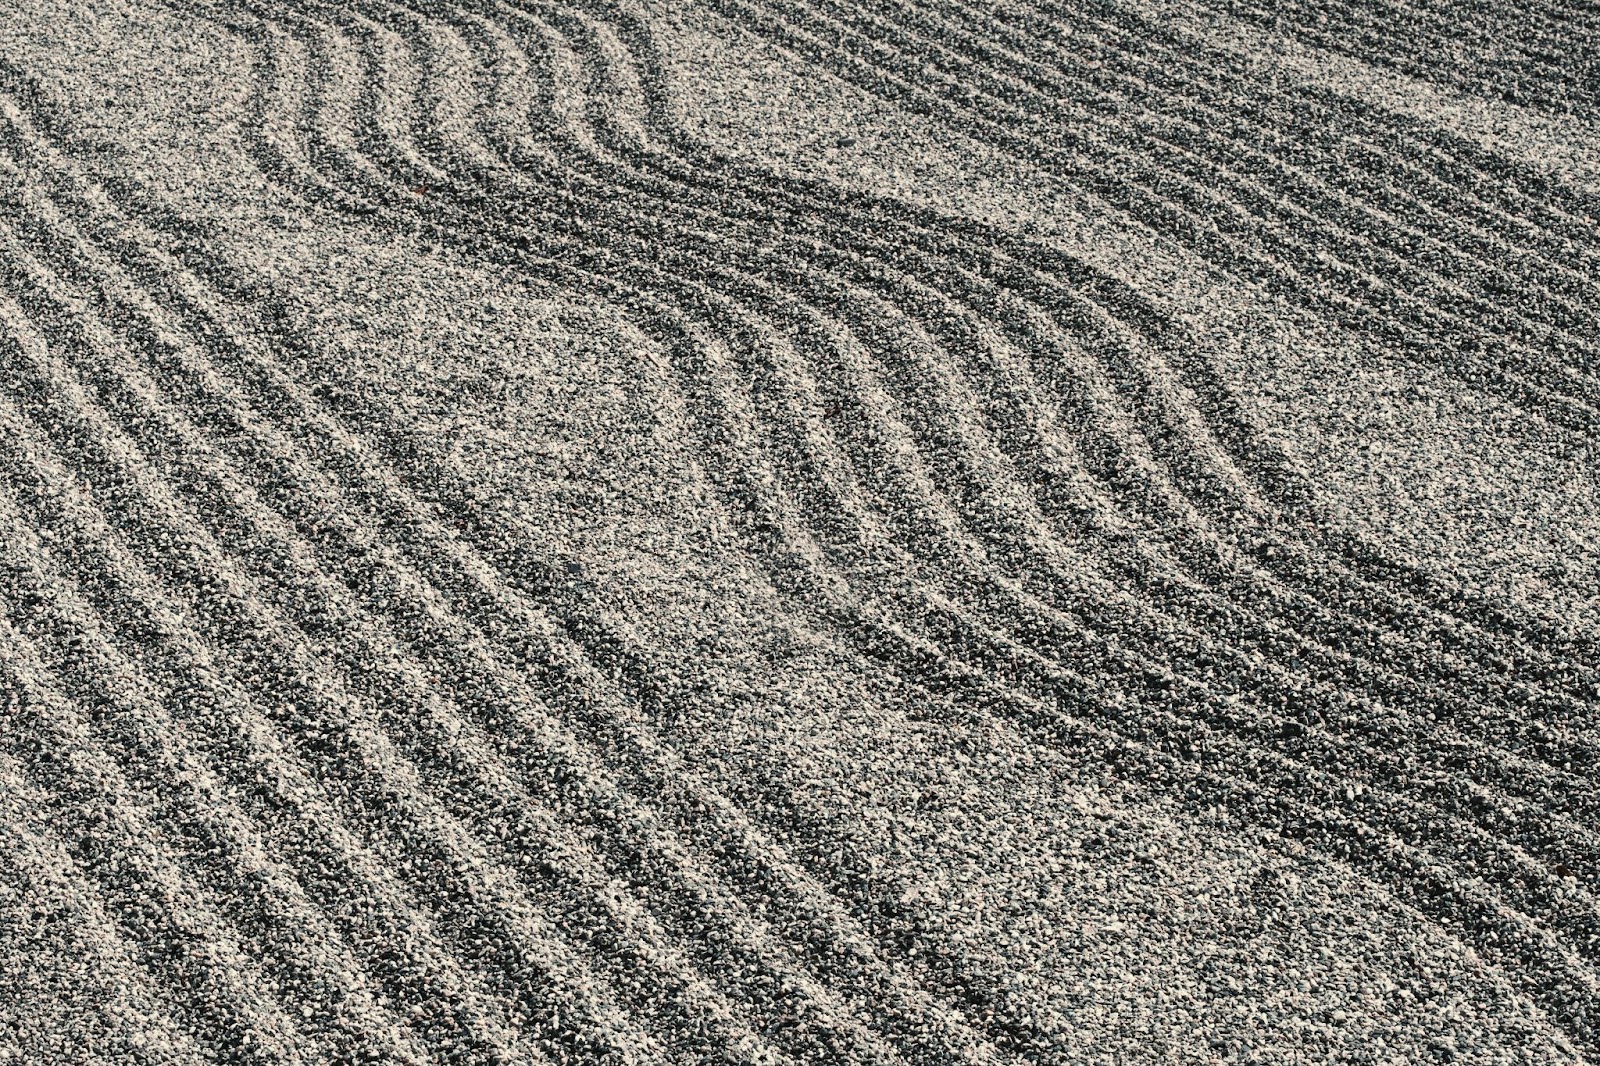 Patterns in raked gravel